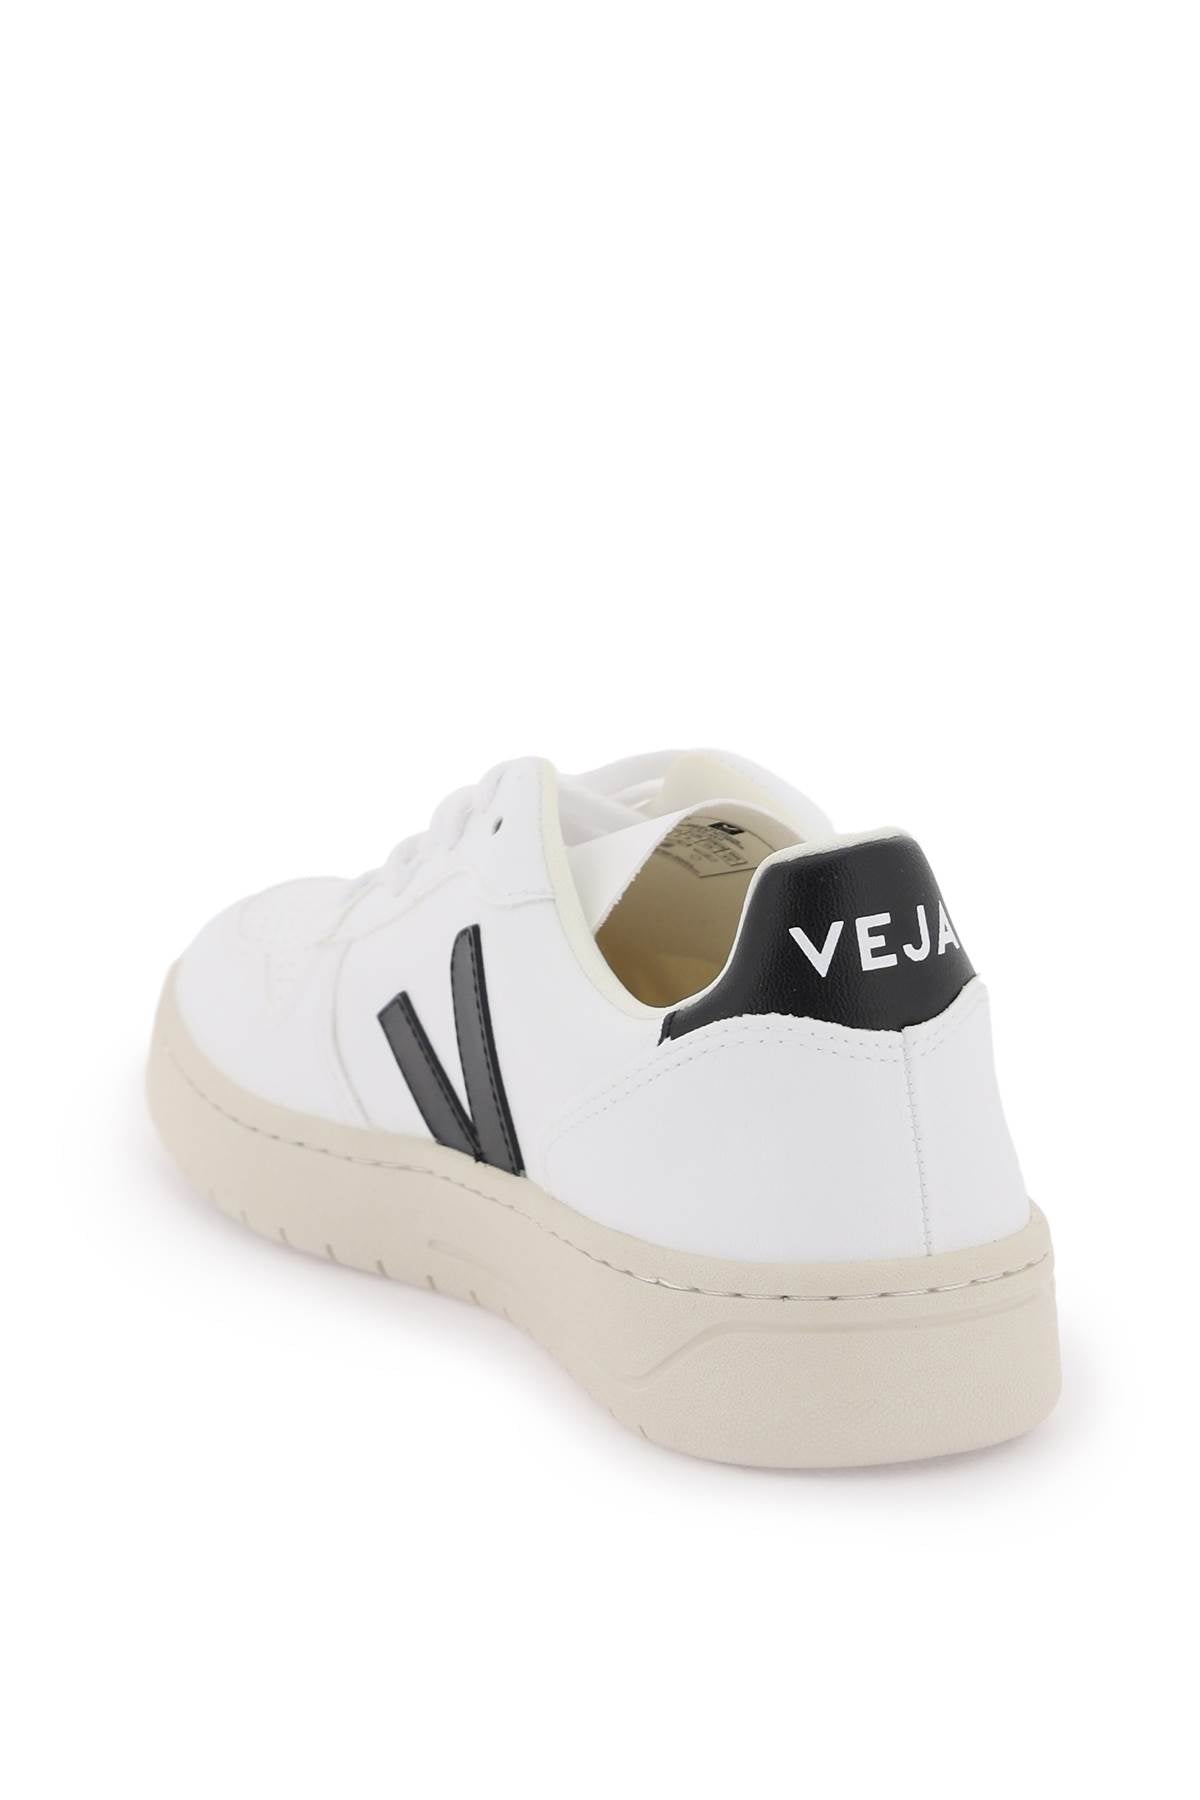 Veja v-10 leather sneakers-2